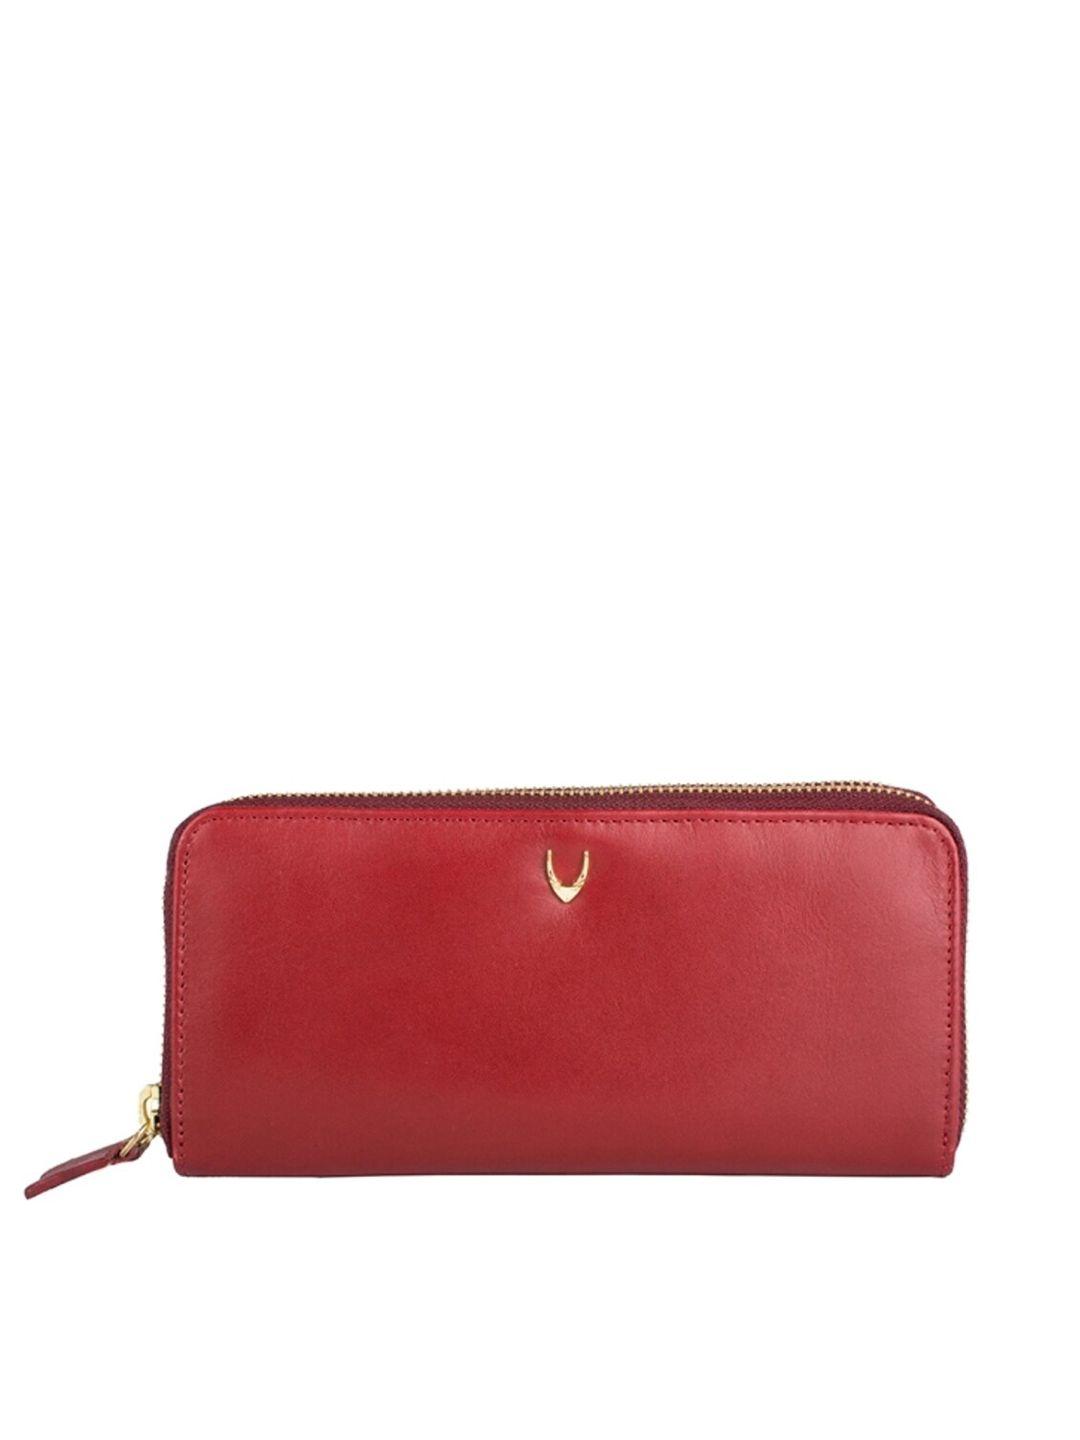 hidesign red purse clutch